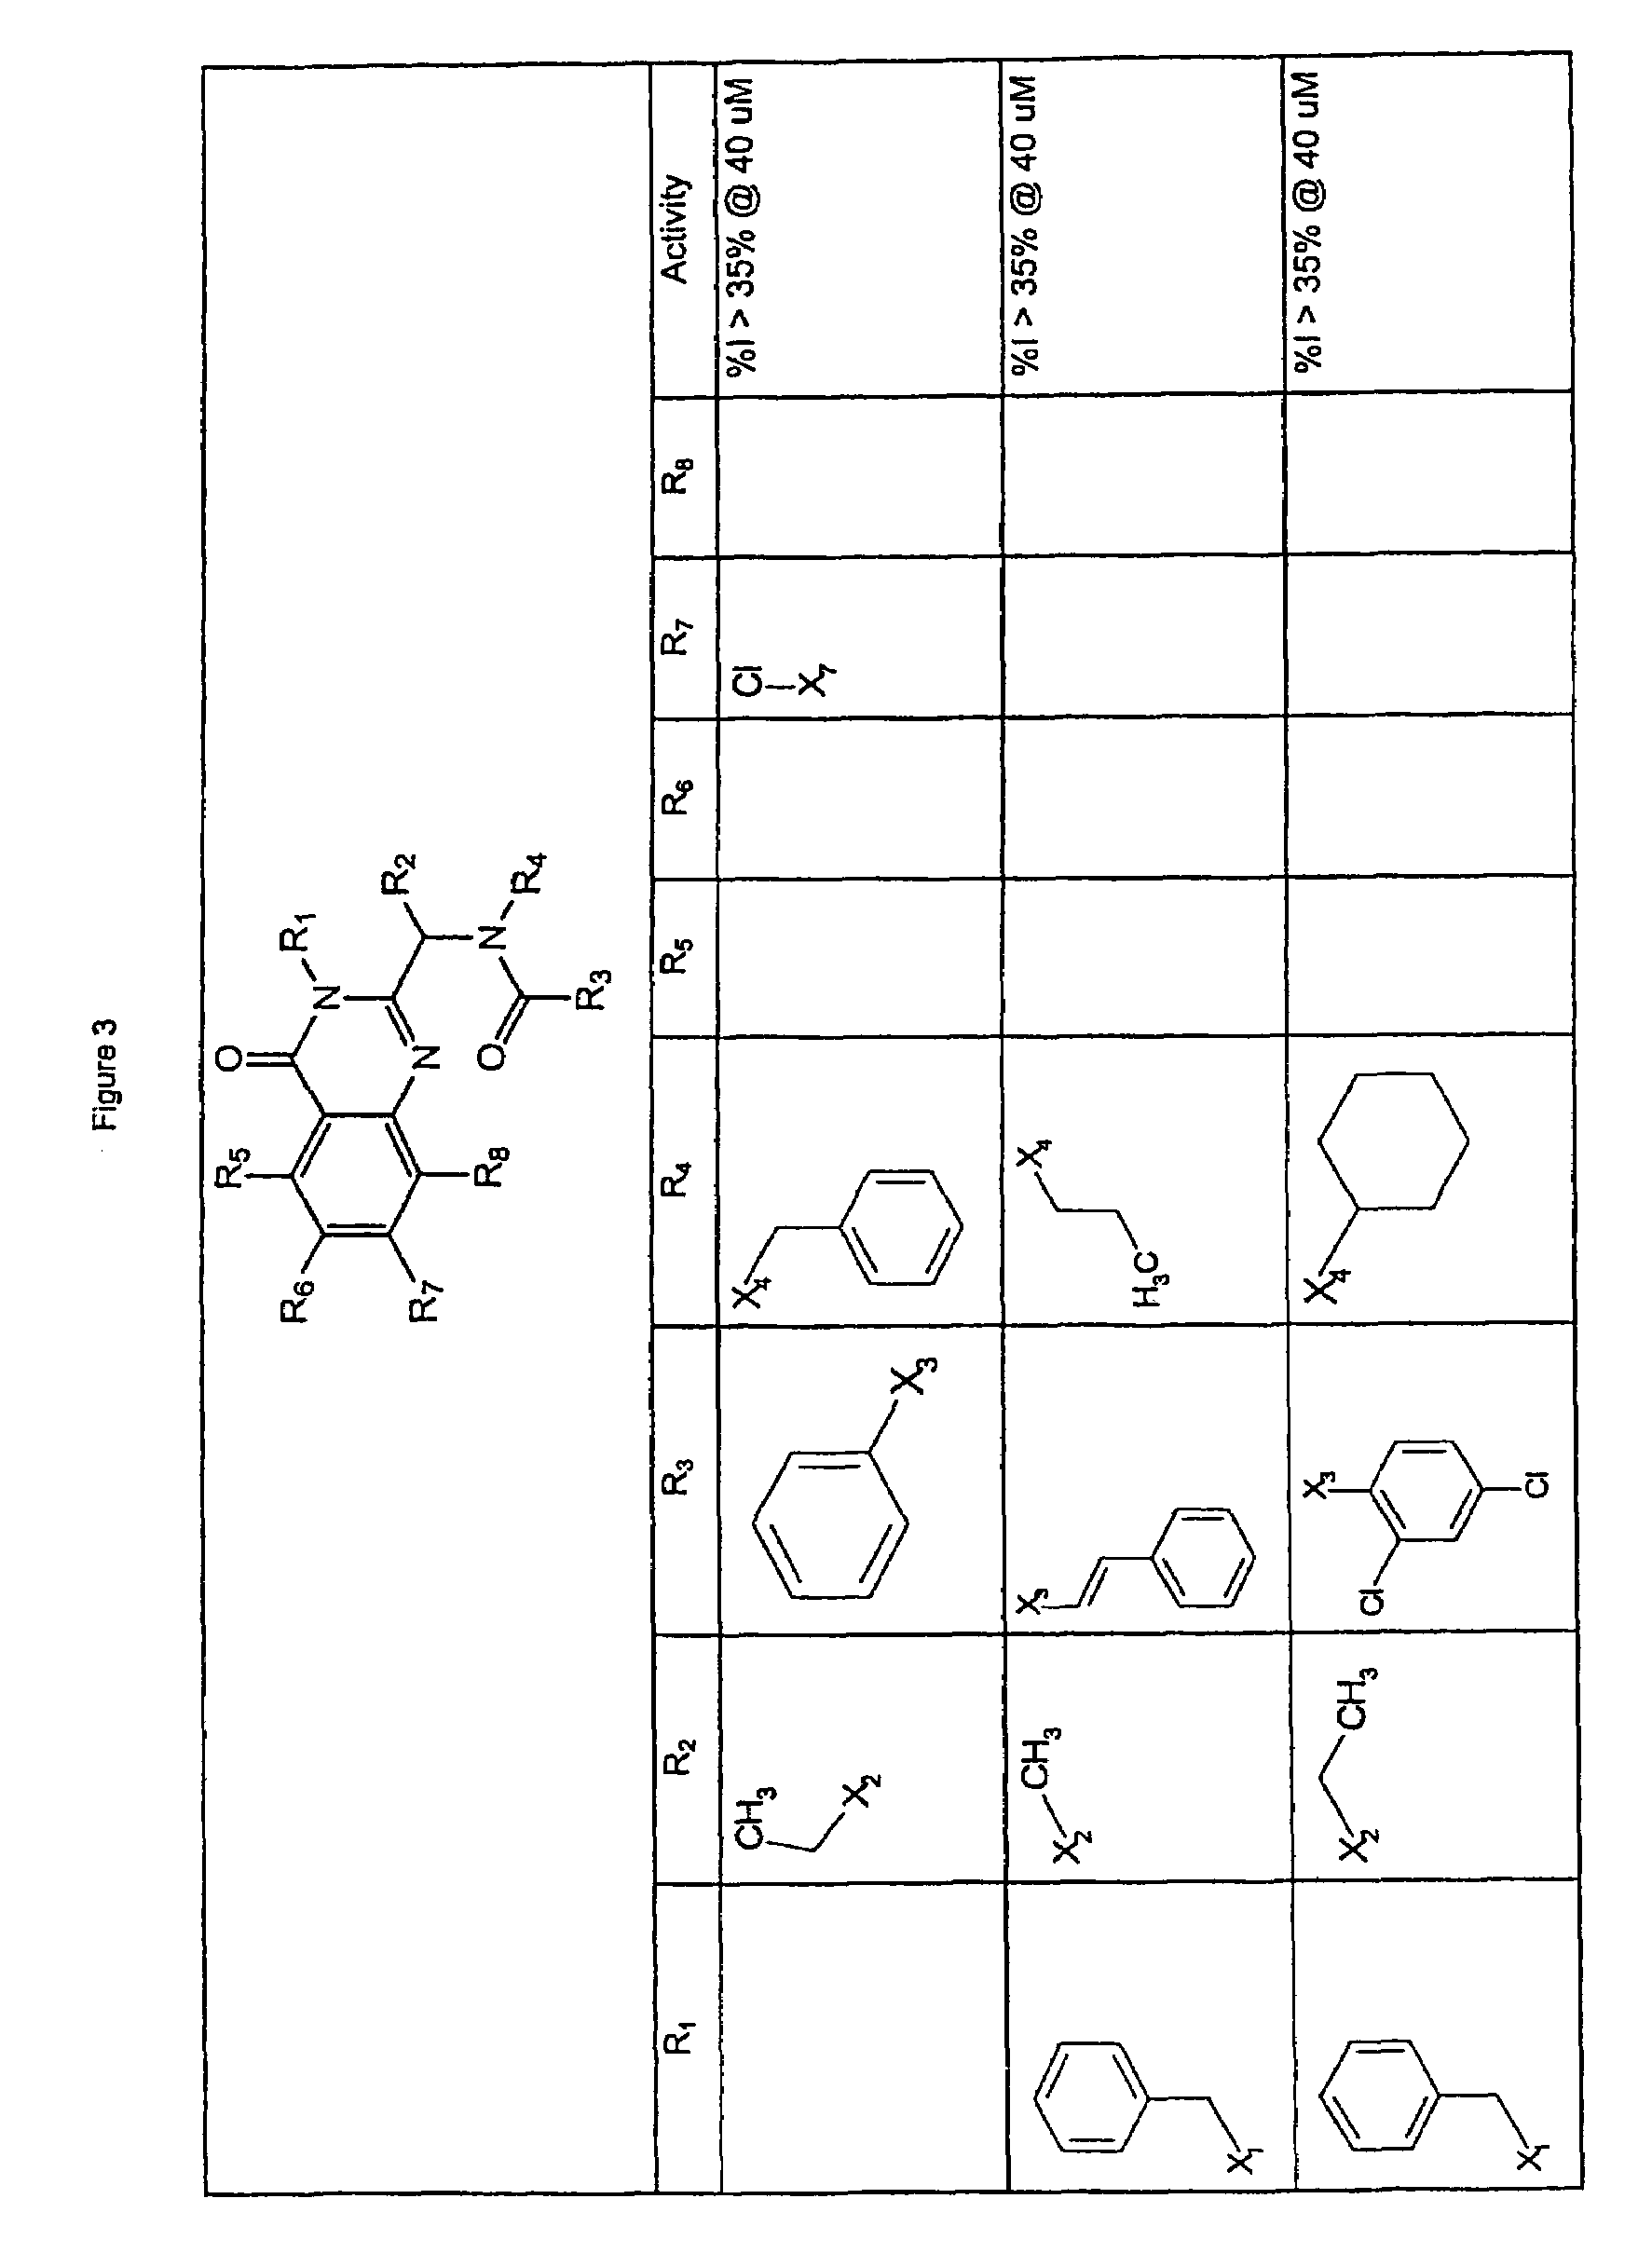 Quinazolinone KSP inhibitors